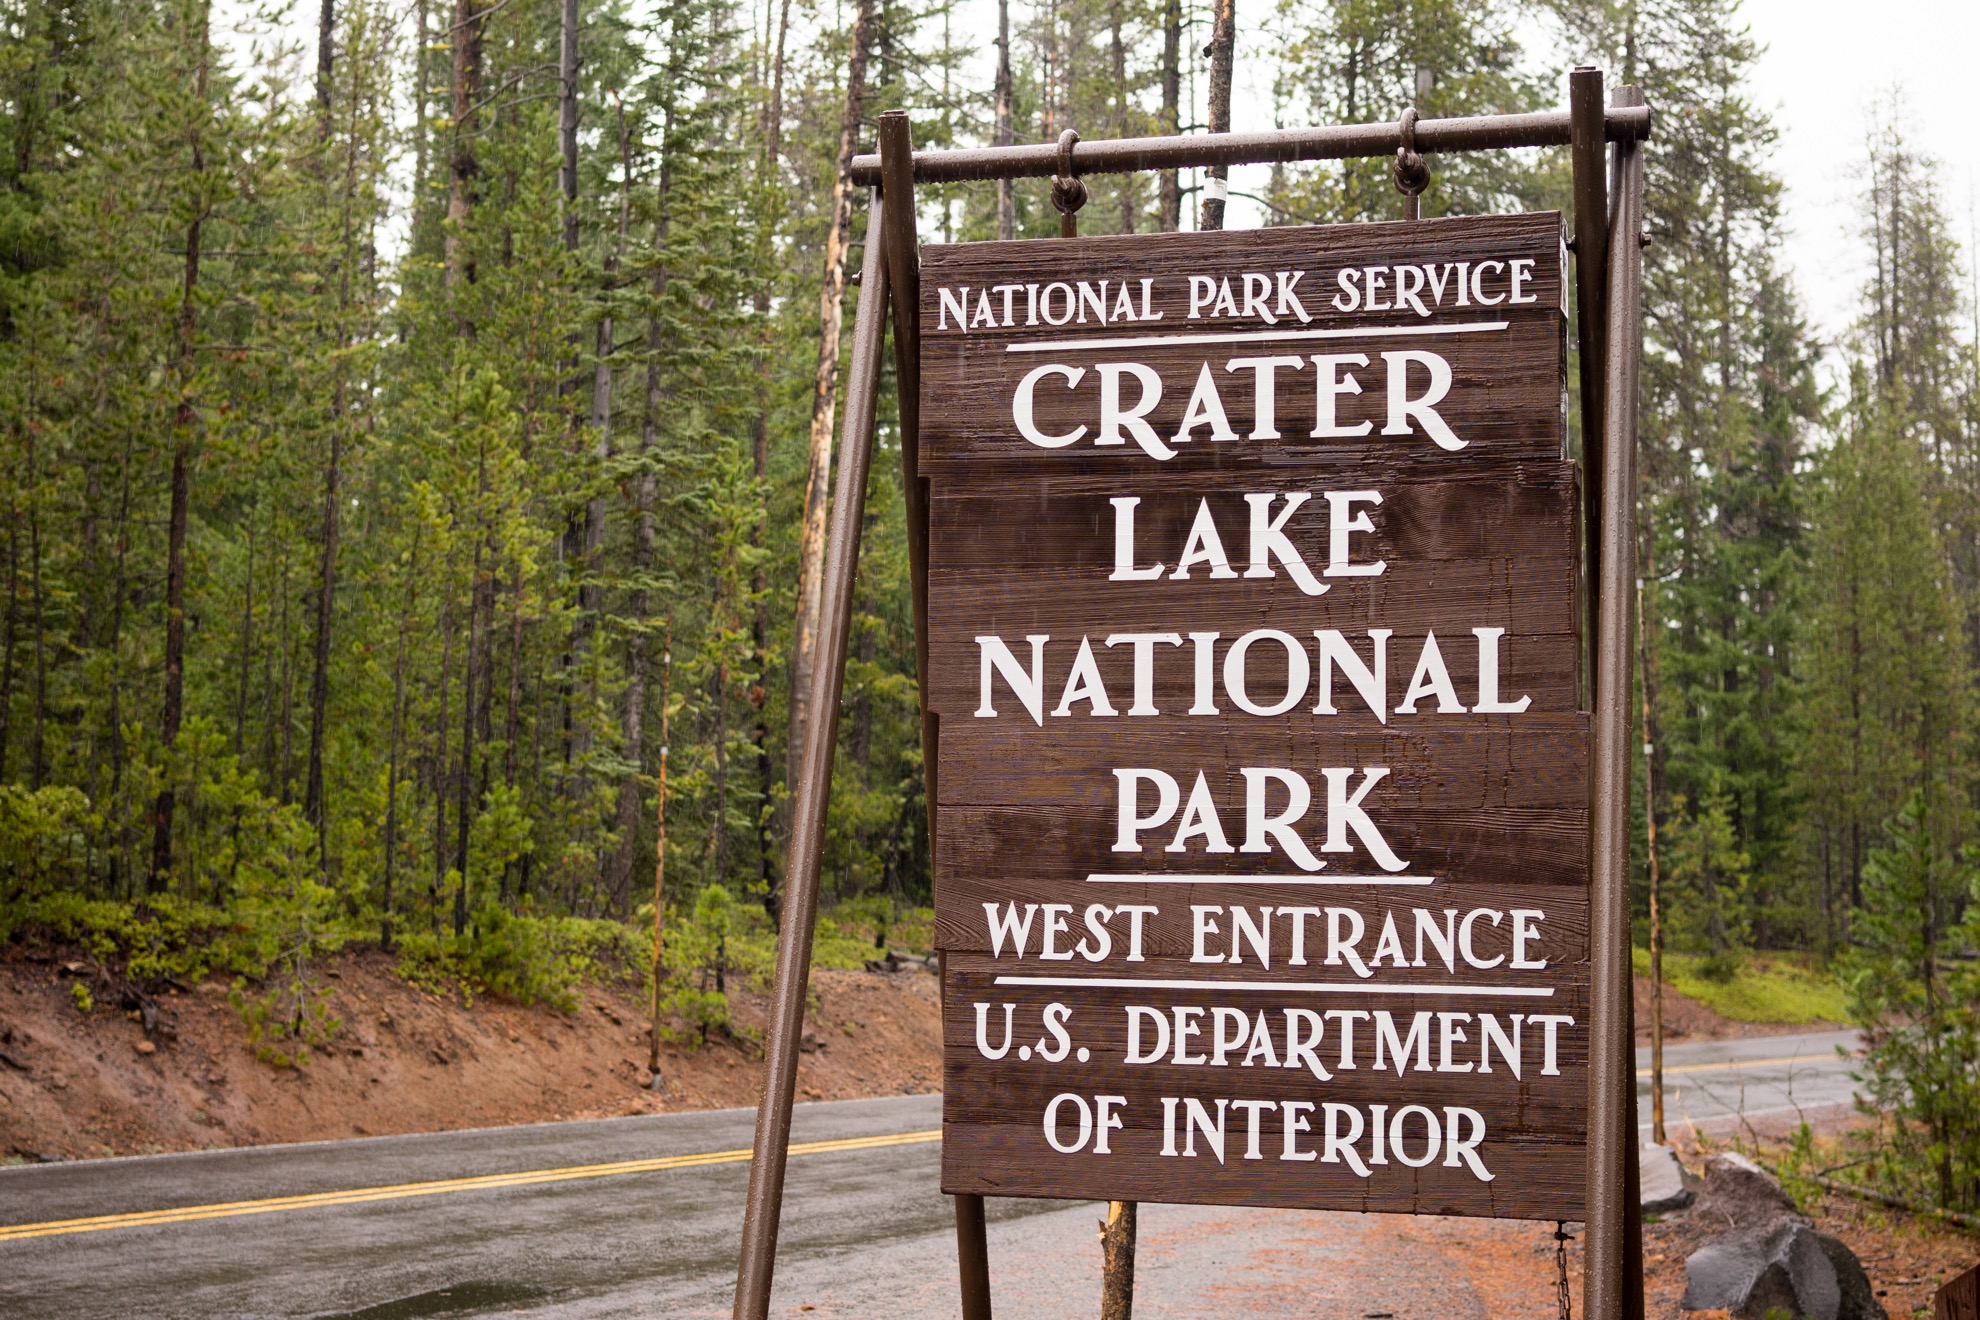 Cómo visitar el Parque Nacional Crater Lake en Oregon - 1